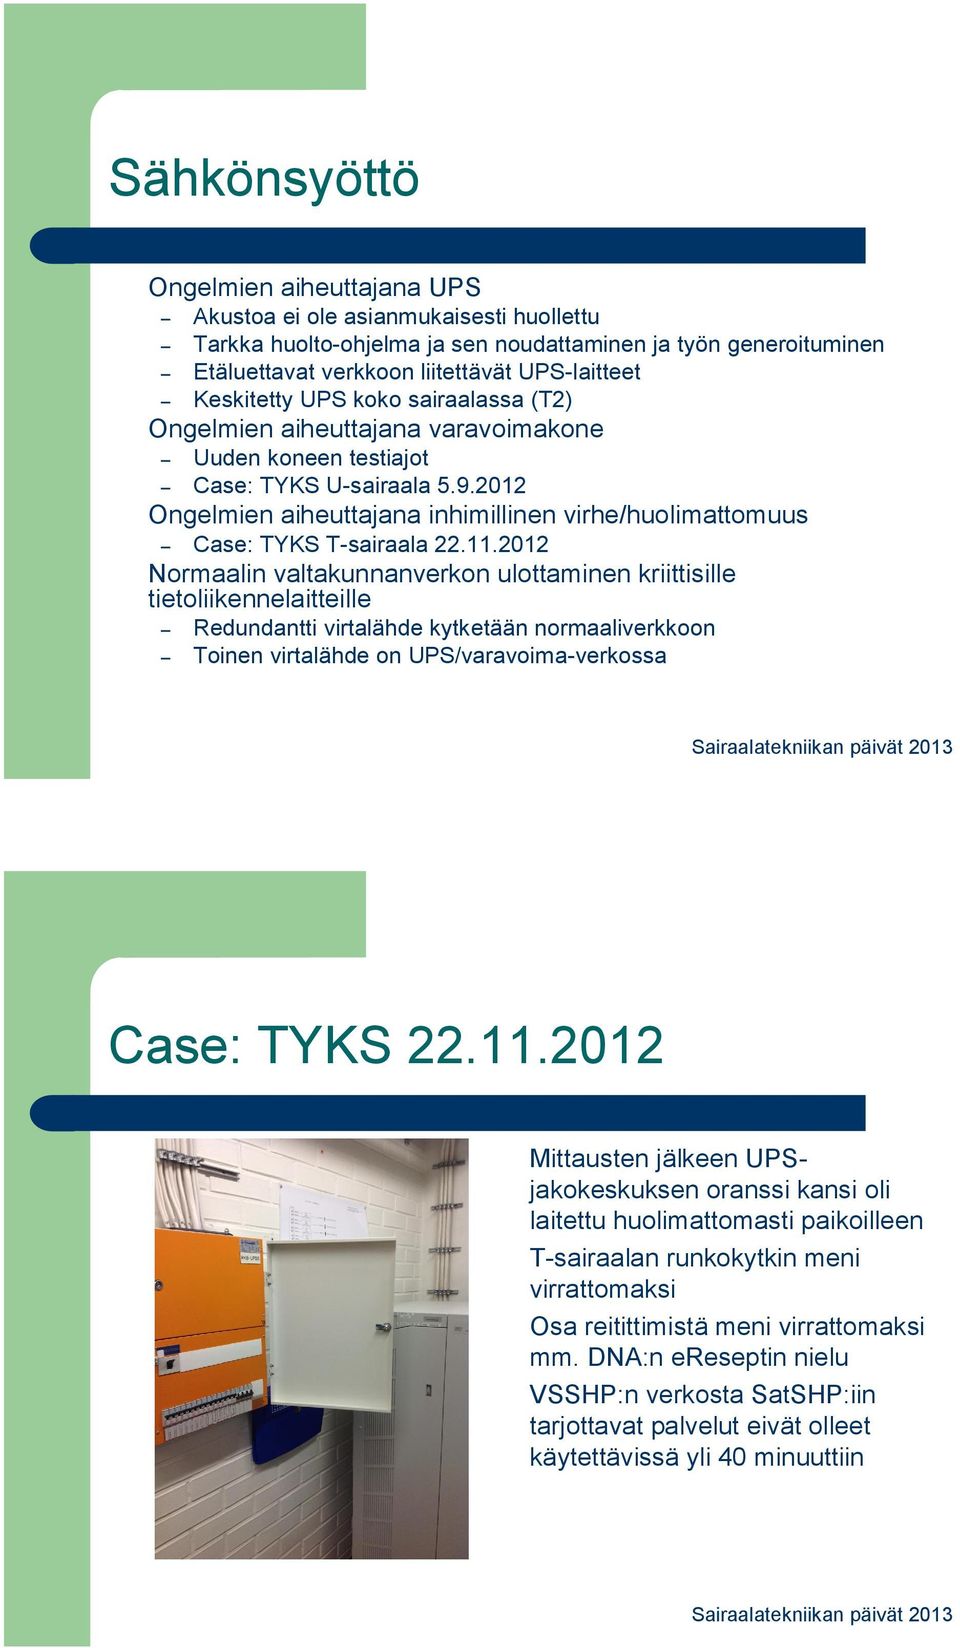 2012 Ongelmien aiheuttajana inhimillinen virhe/huolimattomuus Case: TYKS T-sairaala 22.11.